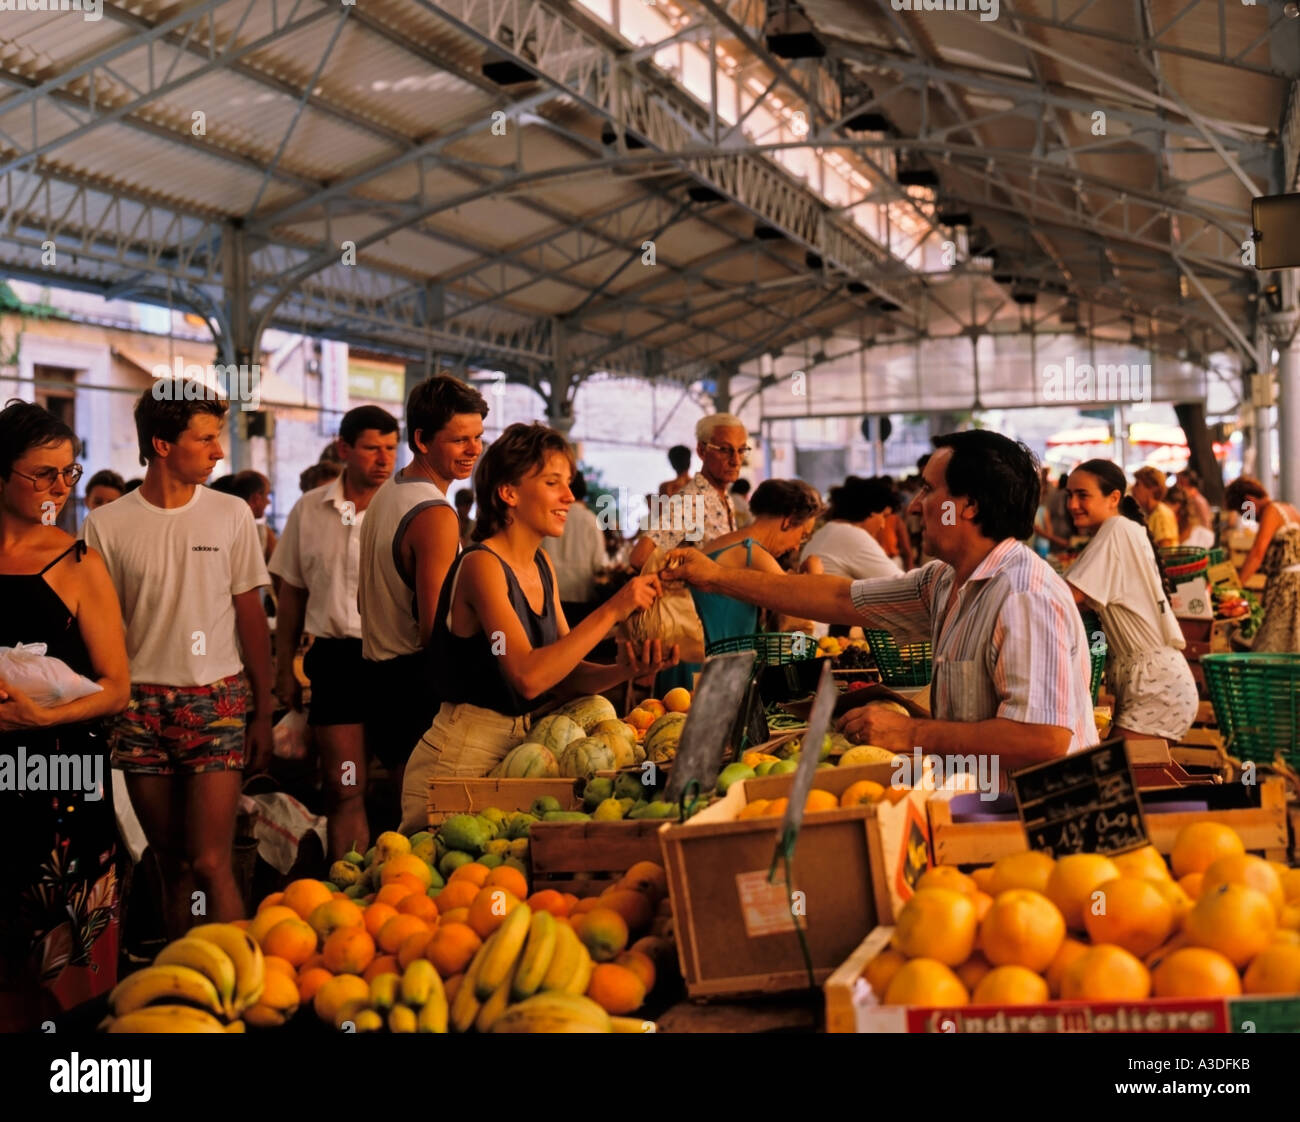 Volti sorridenti e allegri al mercato provenzale Cours Massena Marche, Place Nationale, Antibes, Provence-Alpes-Côte d'Azur a sud della Francia Foto Stock